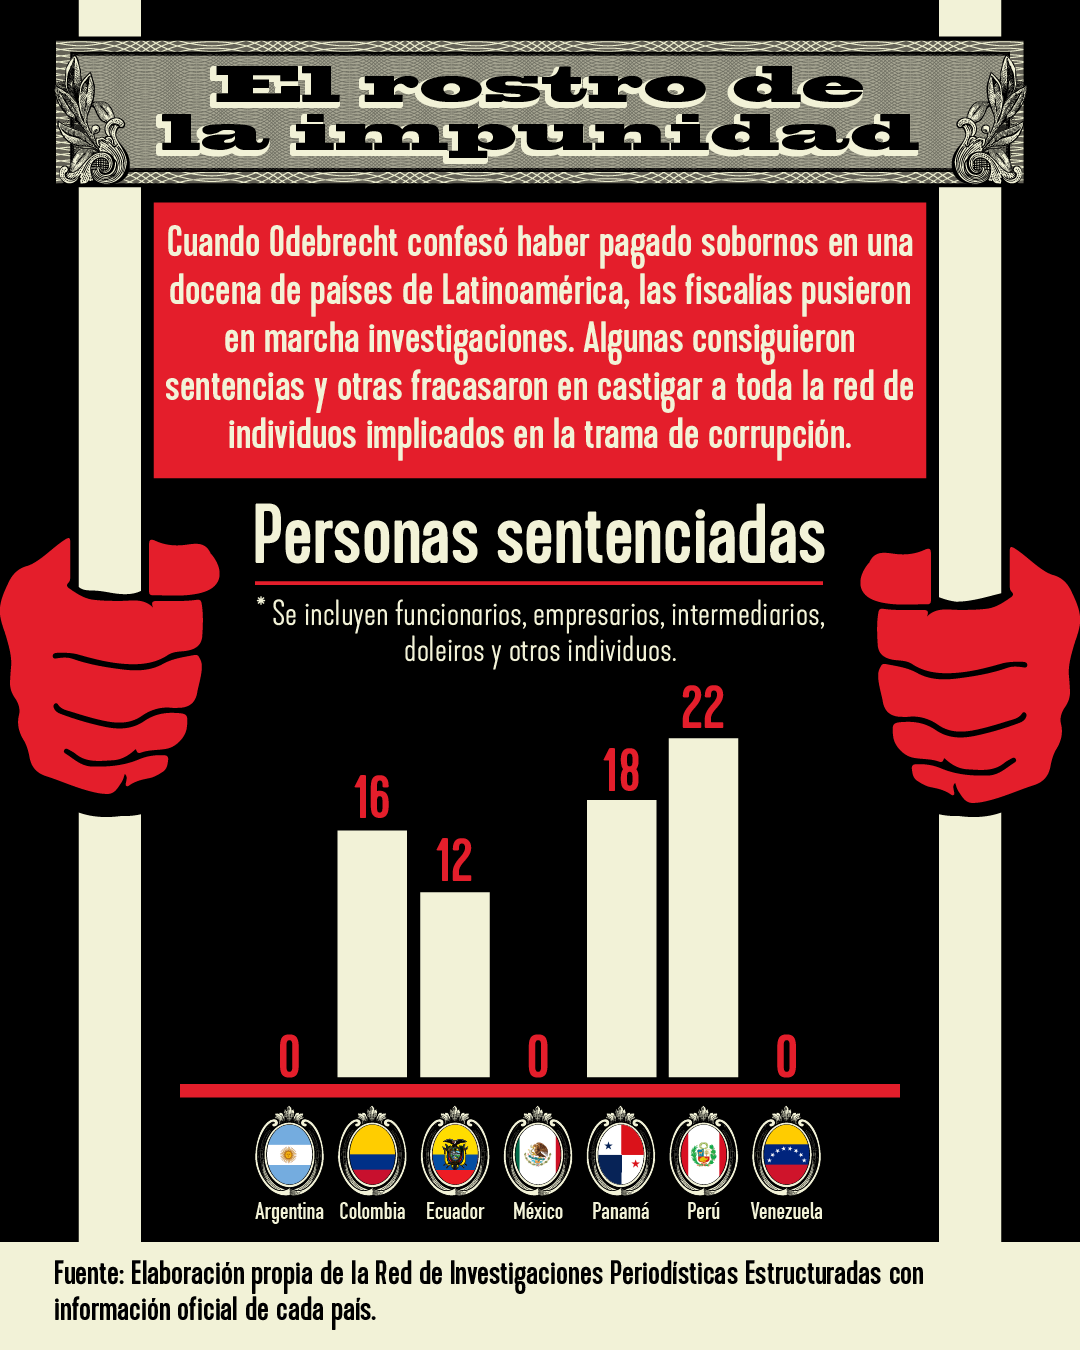 Personas sentenciadas por el escándalo de Odebrecht en Latinoamérica.